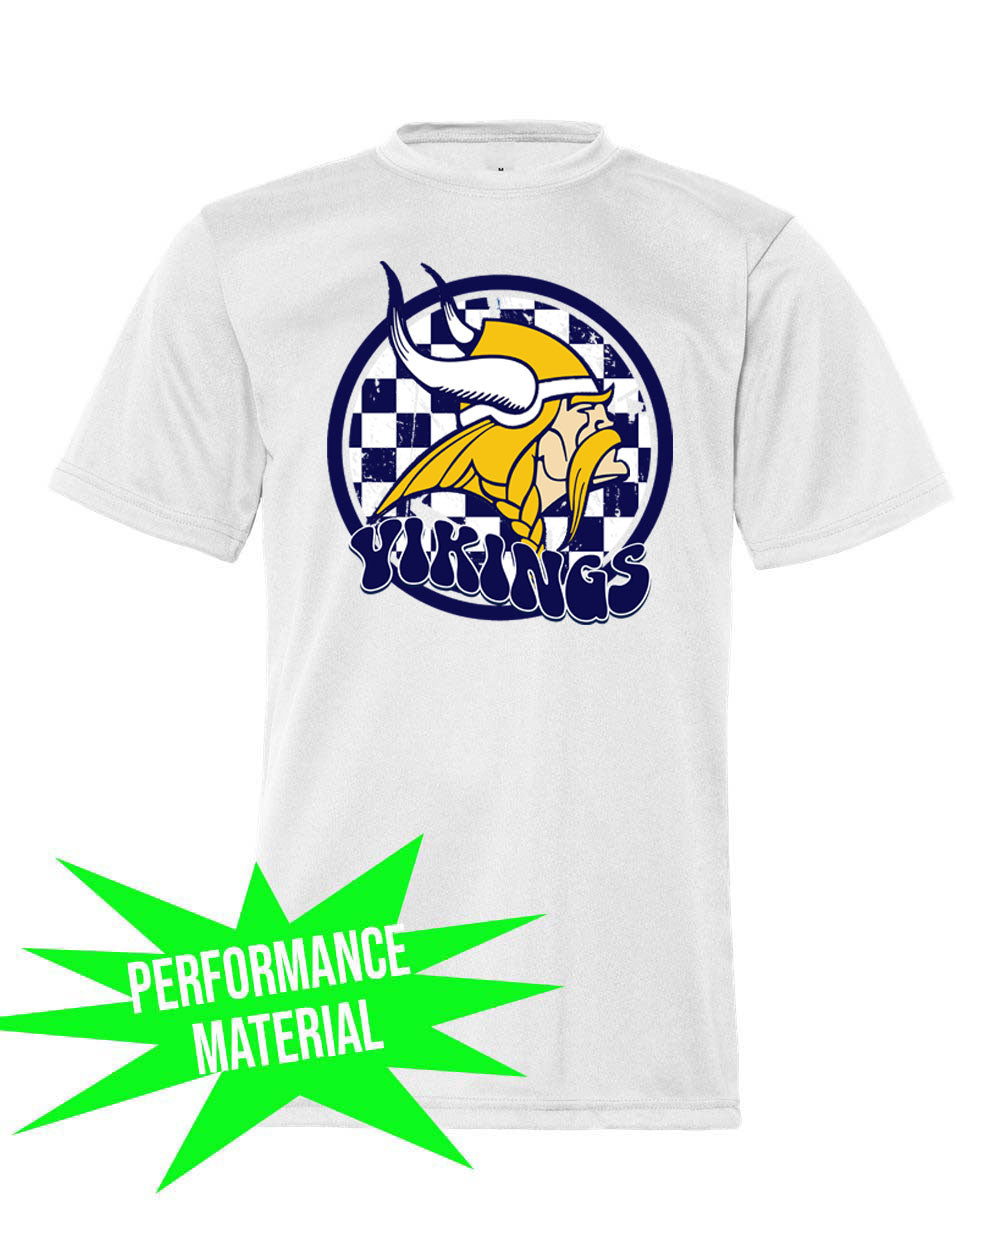 Cedar Mountain Performance Material design 4 T-Shirt